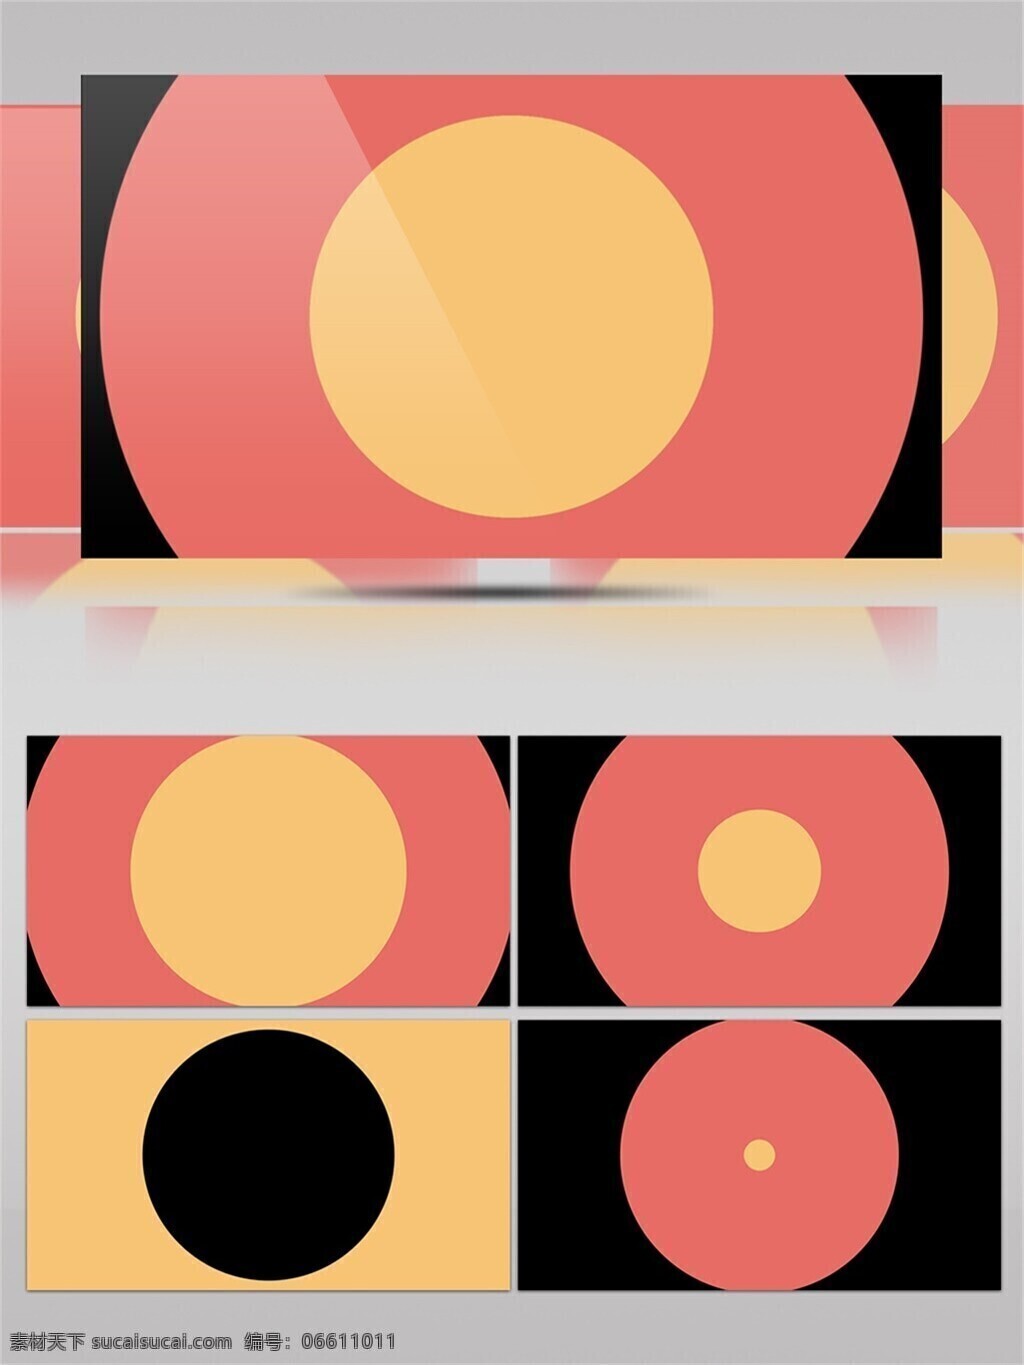 三 色 圆形 图案 动画 视频 黄色 粉红色 黑色 动态 卡通 实心圆 变动 由大变小 动感设计